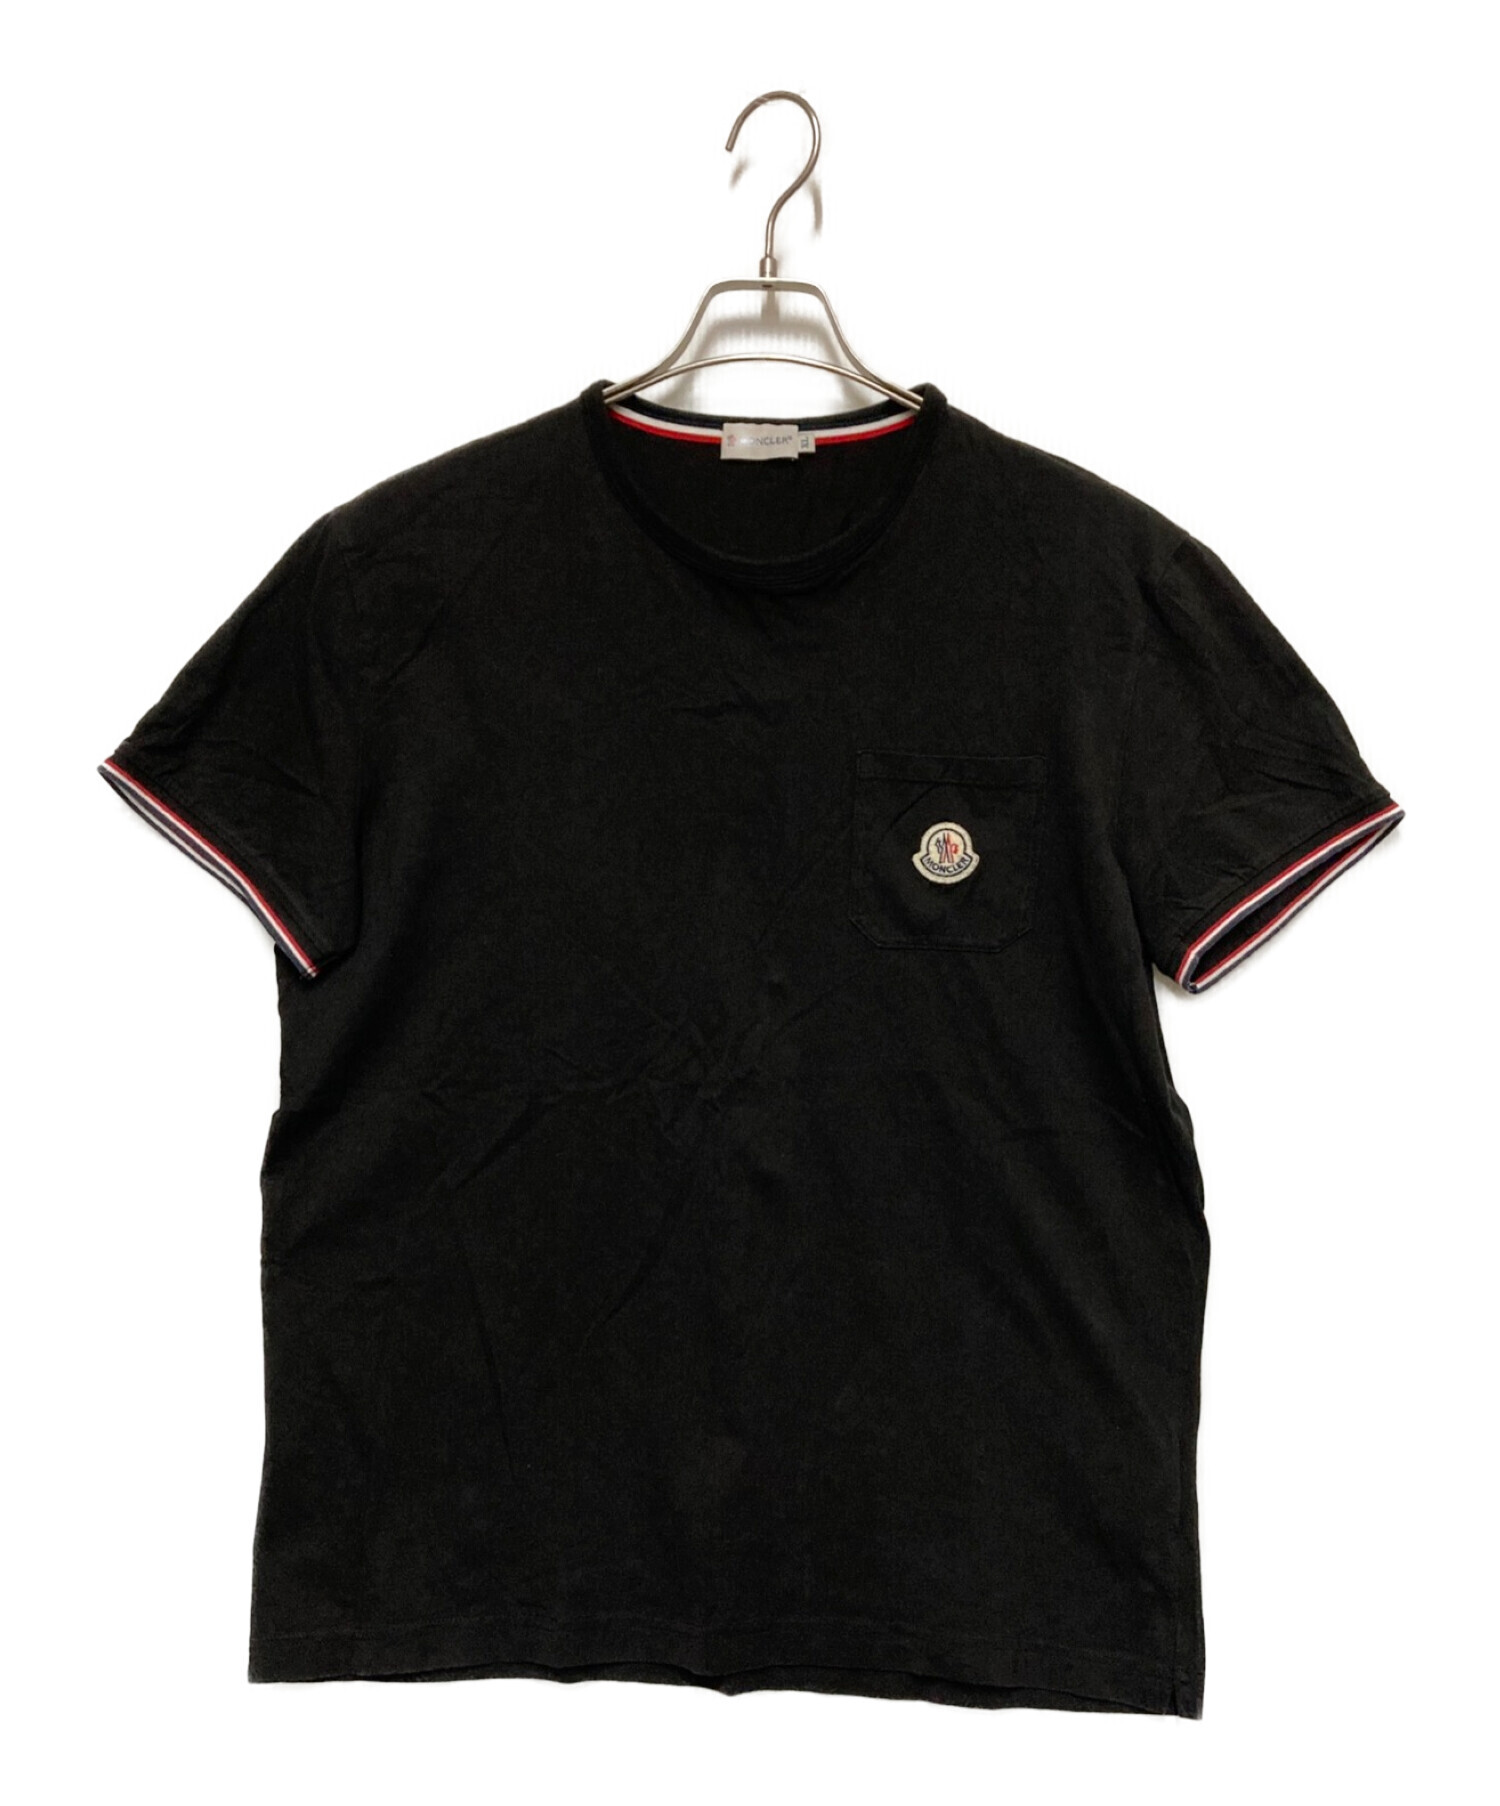 MONCLER (モンクレール) ロゴワッペンラインデザインポケットTシャツ ブラック サイズ:XL